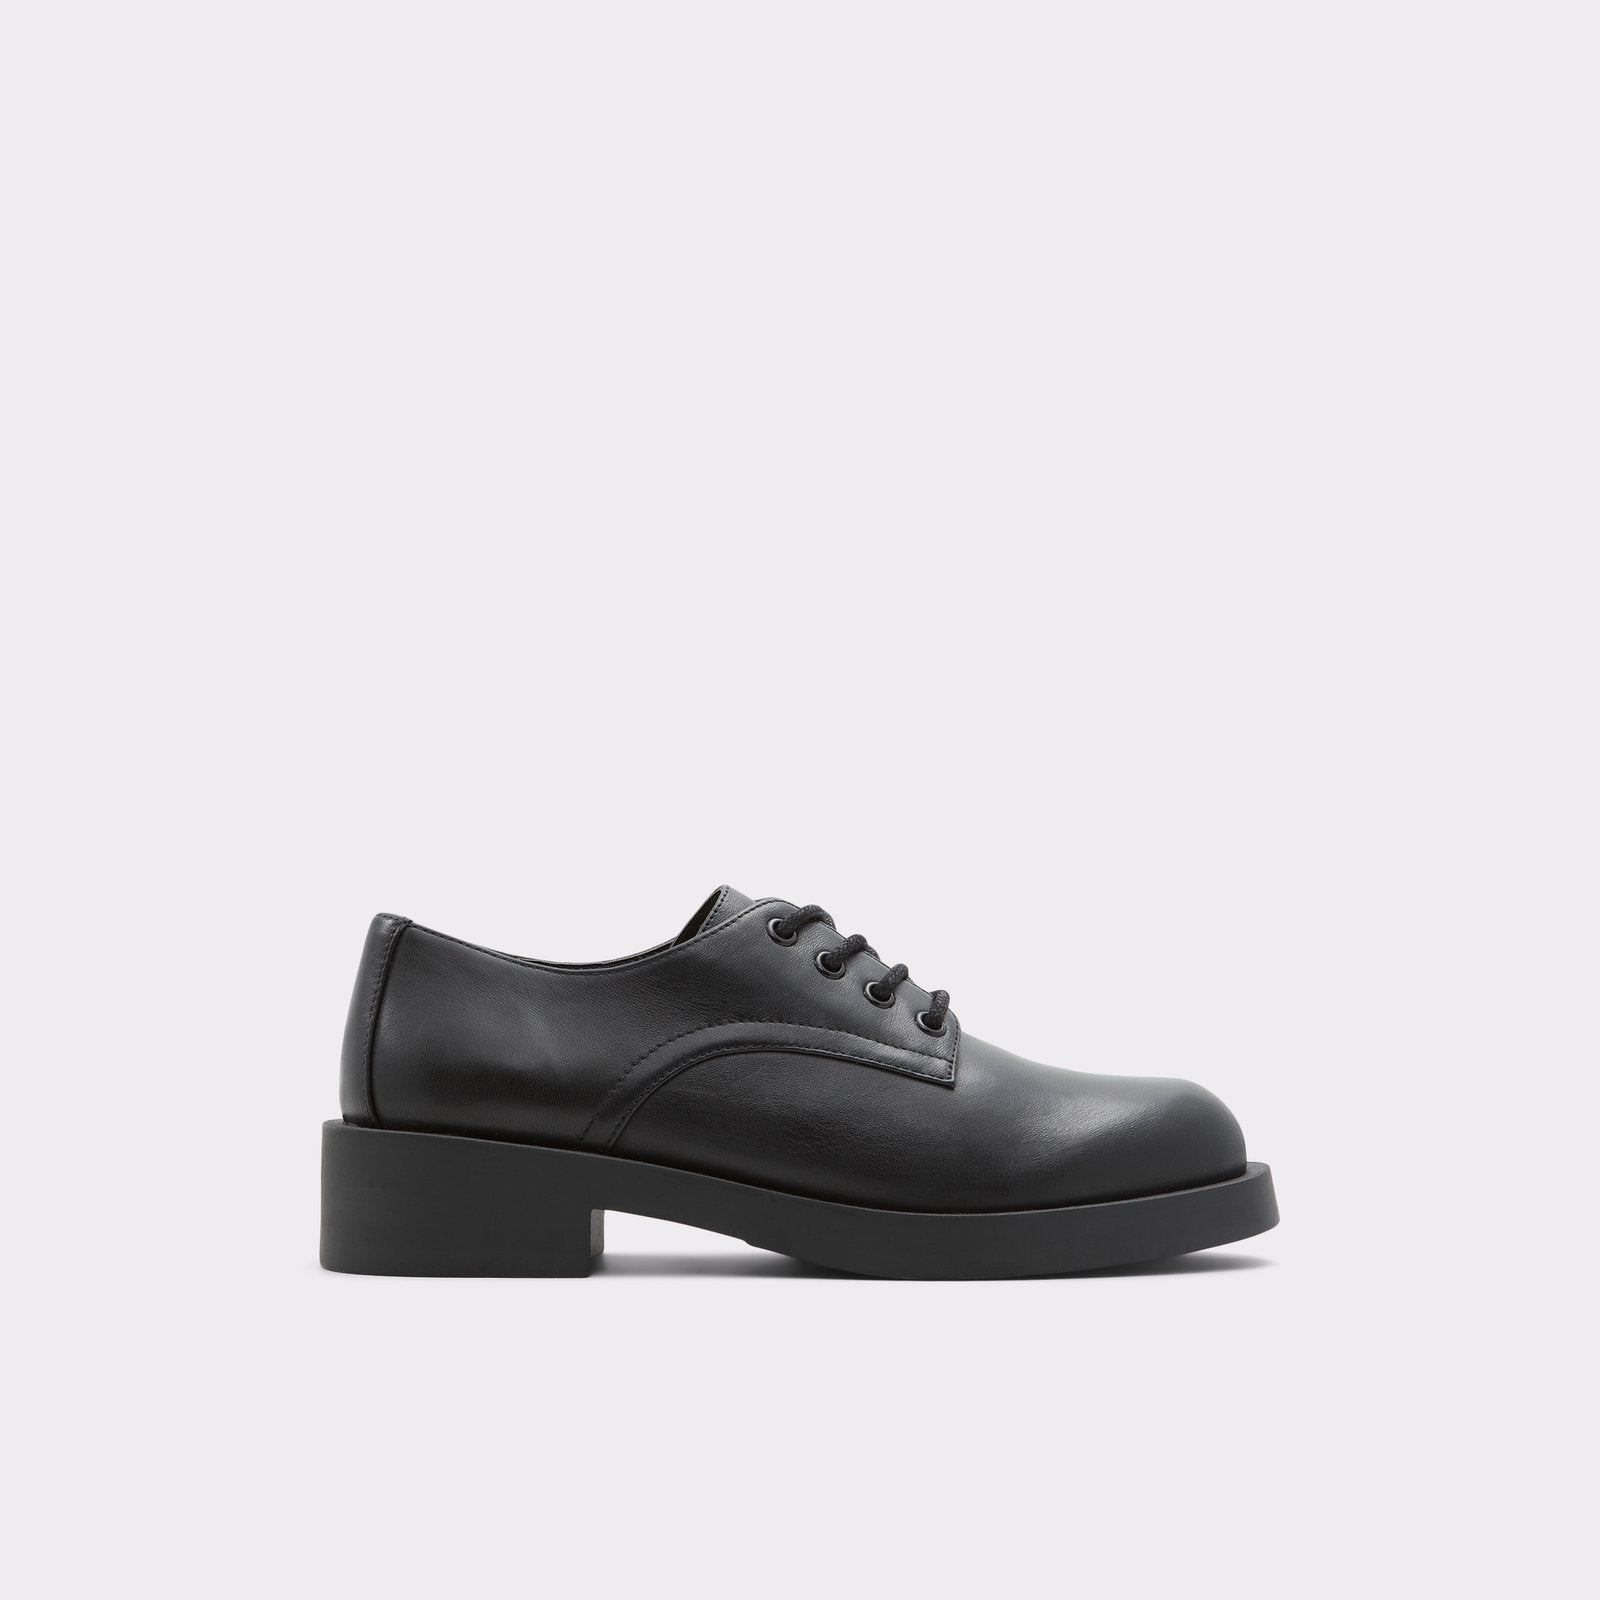 Aldo Women’s Lace Up Shoes Cambridge (Black)